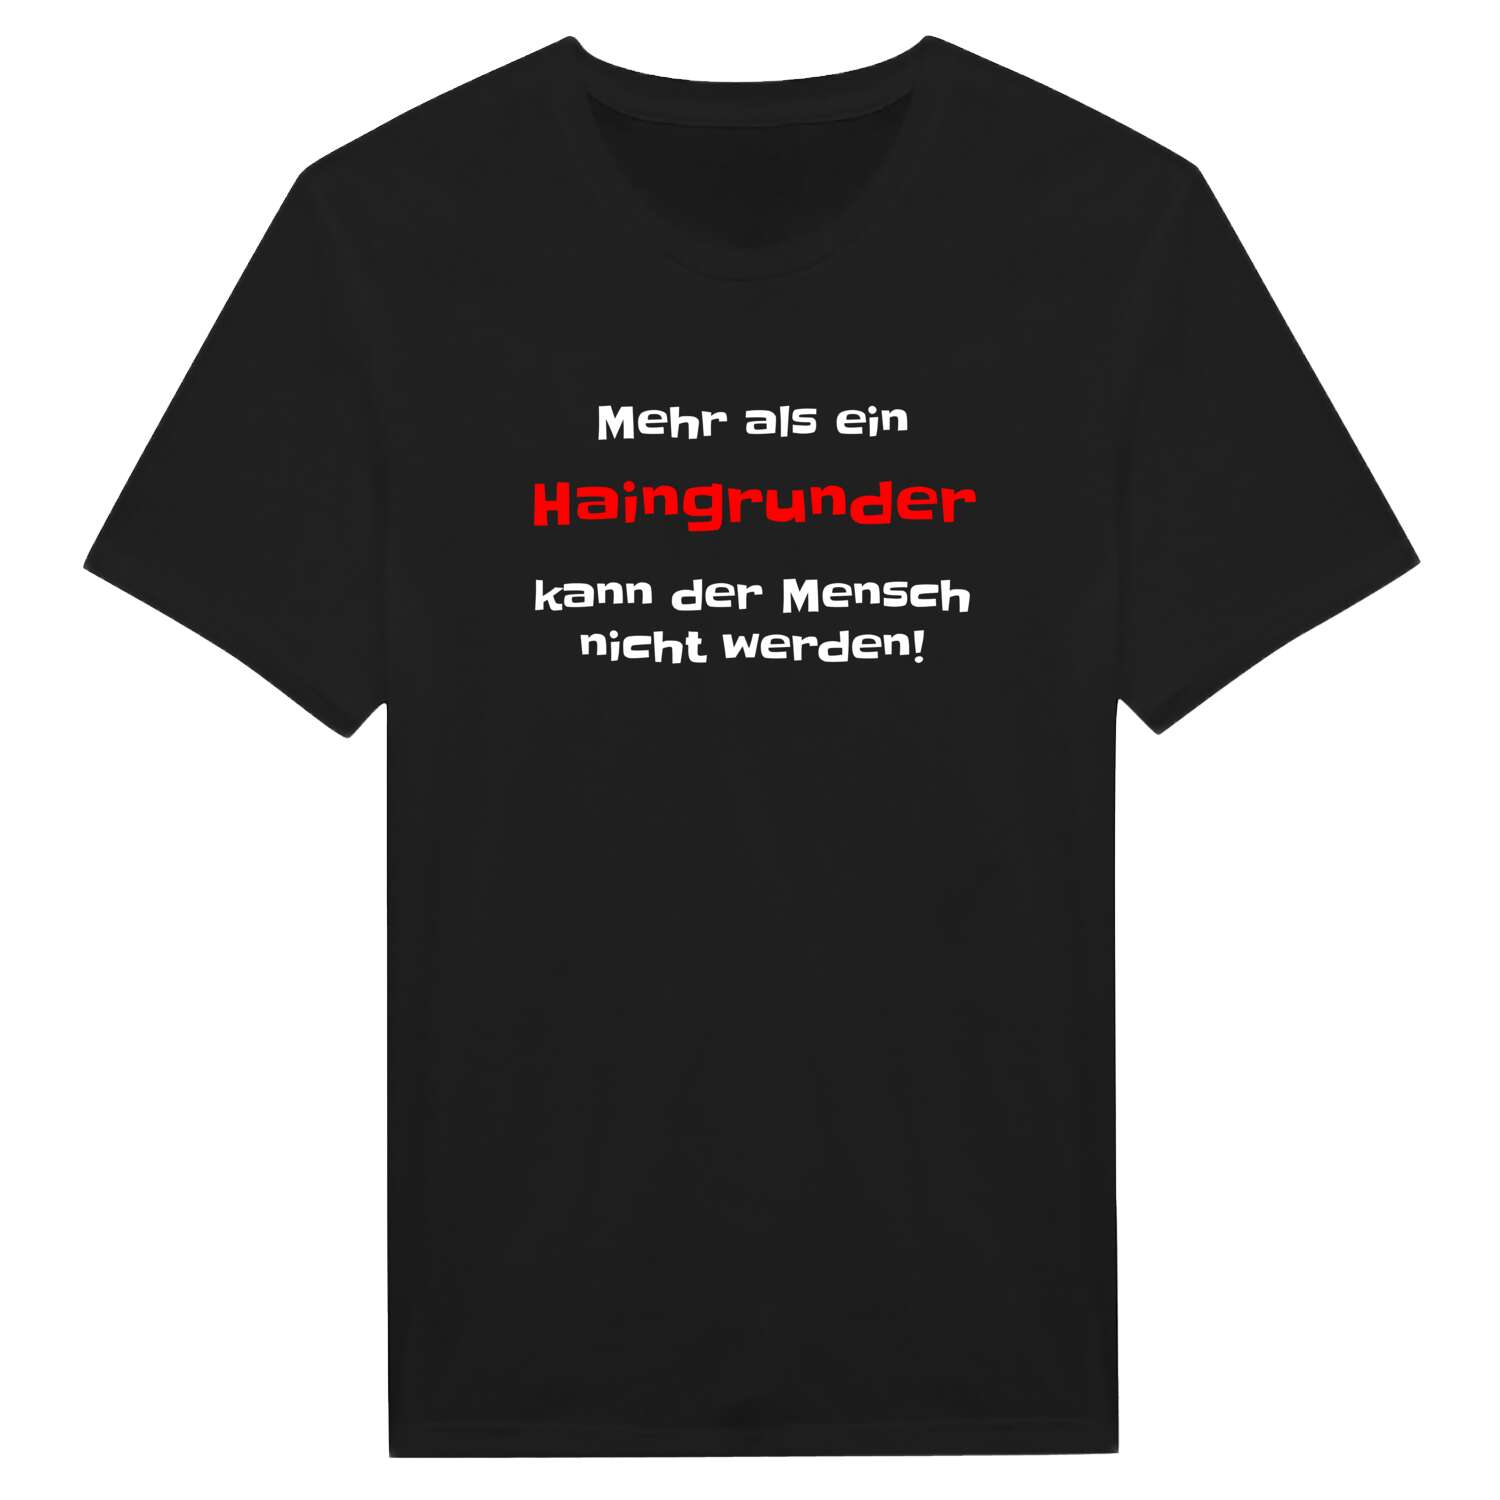 Haingrund T-Shirt »Mehr als ein«